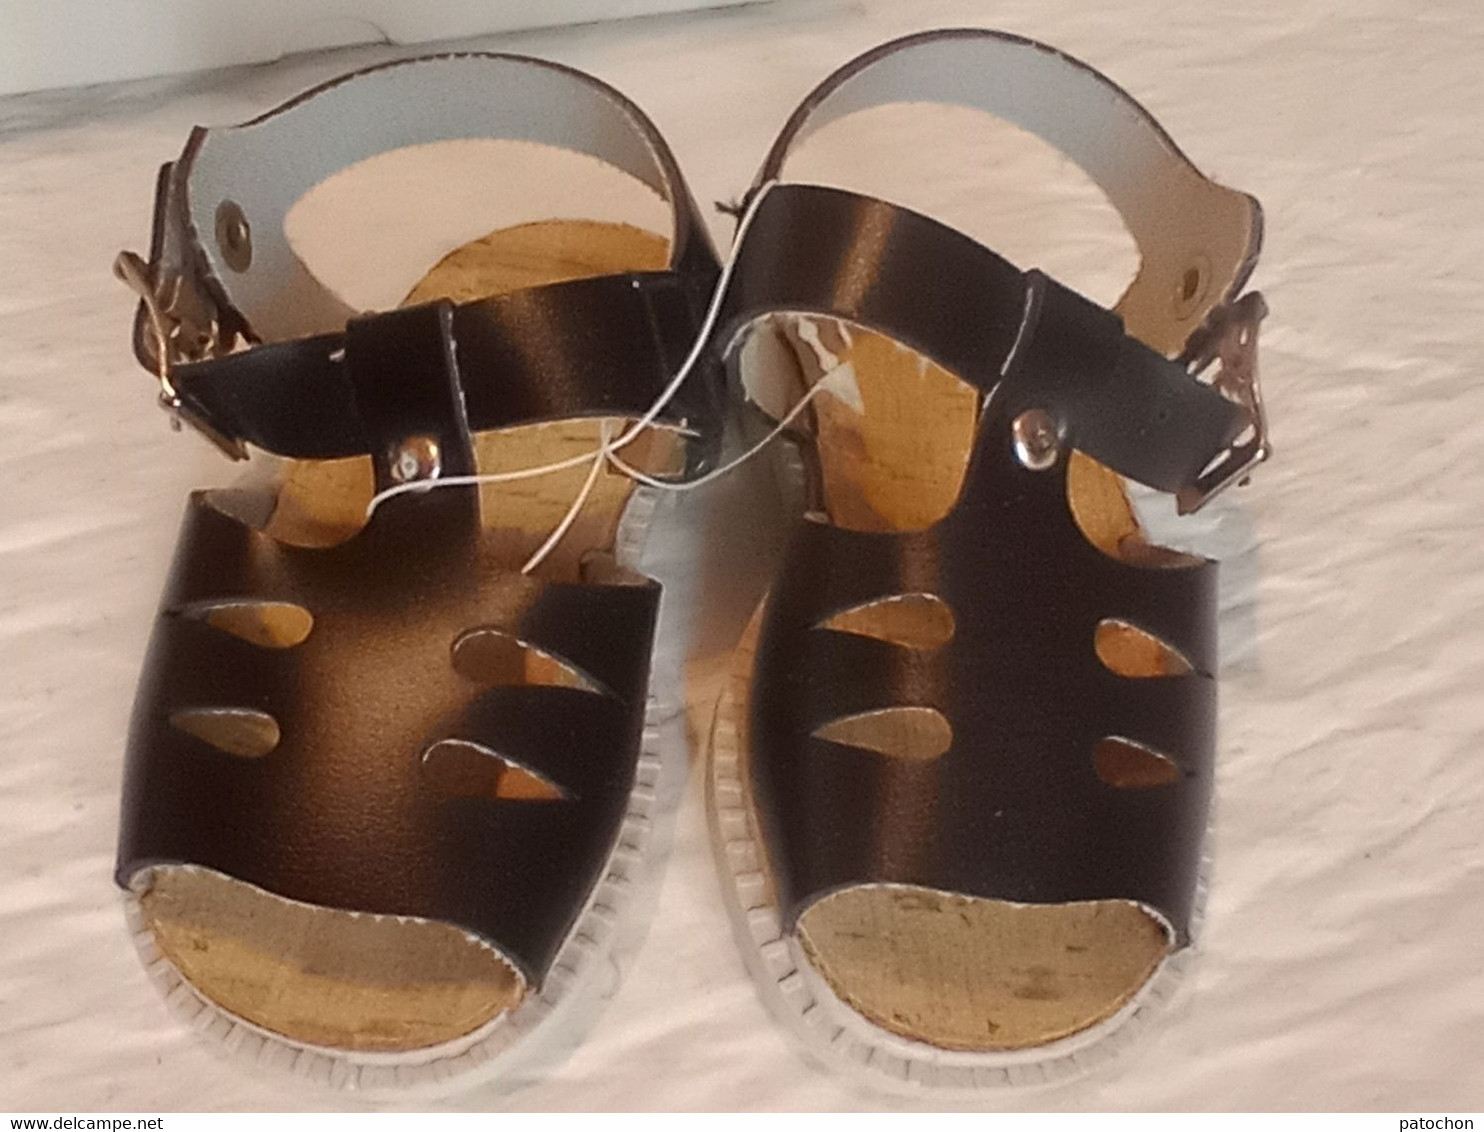 Sandale Bébé Baby Made In Italy Taille 20 Soit 13cm Cuir Liège élastomère Neuve! - Zapatos